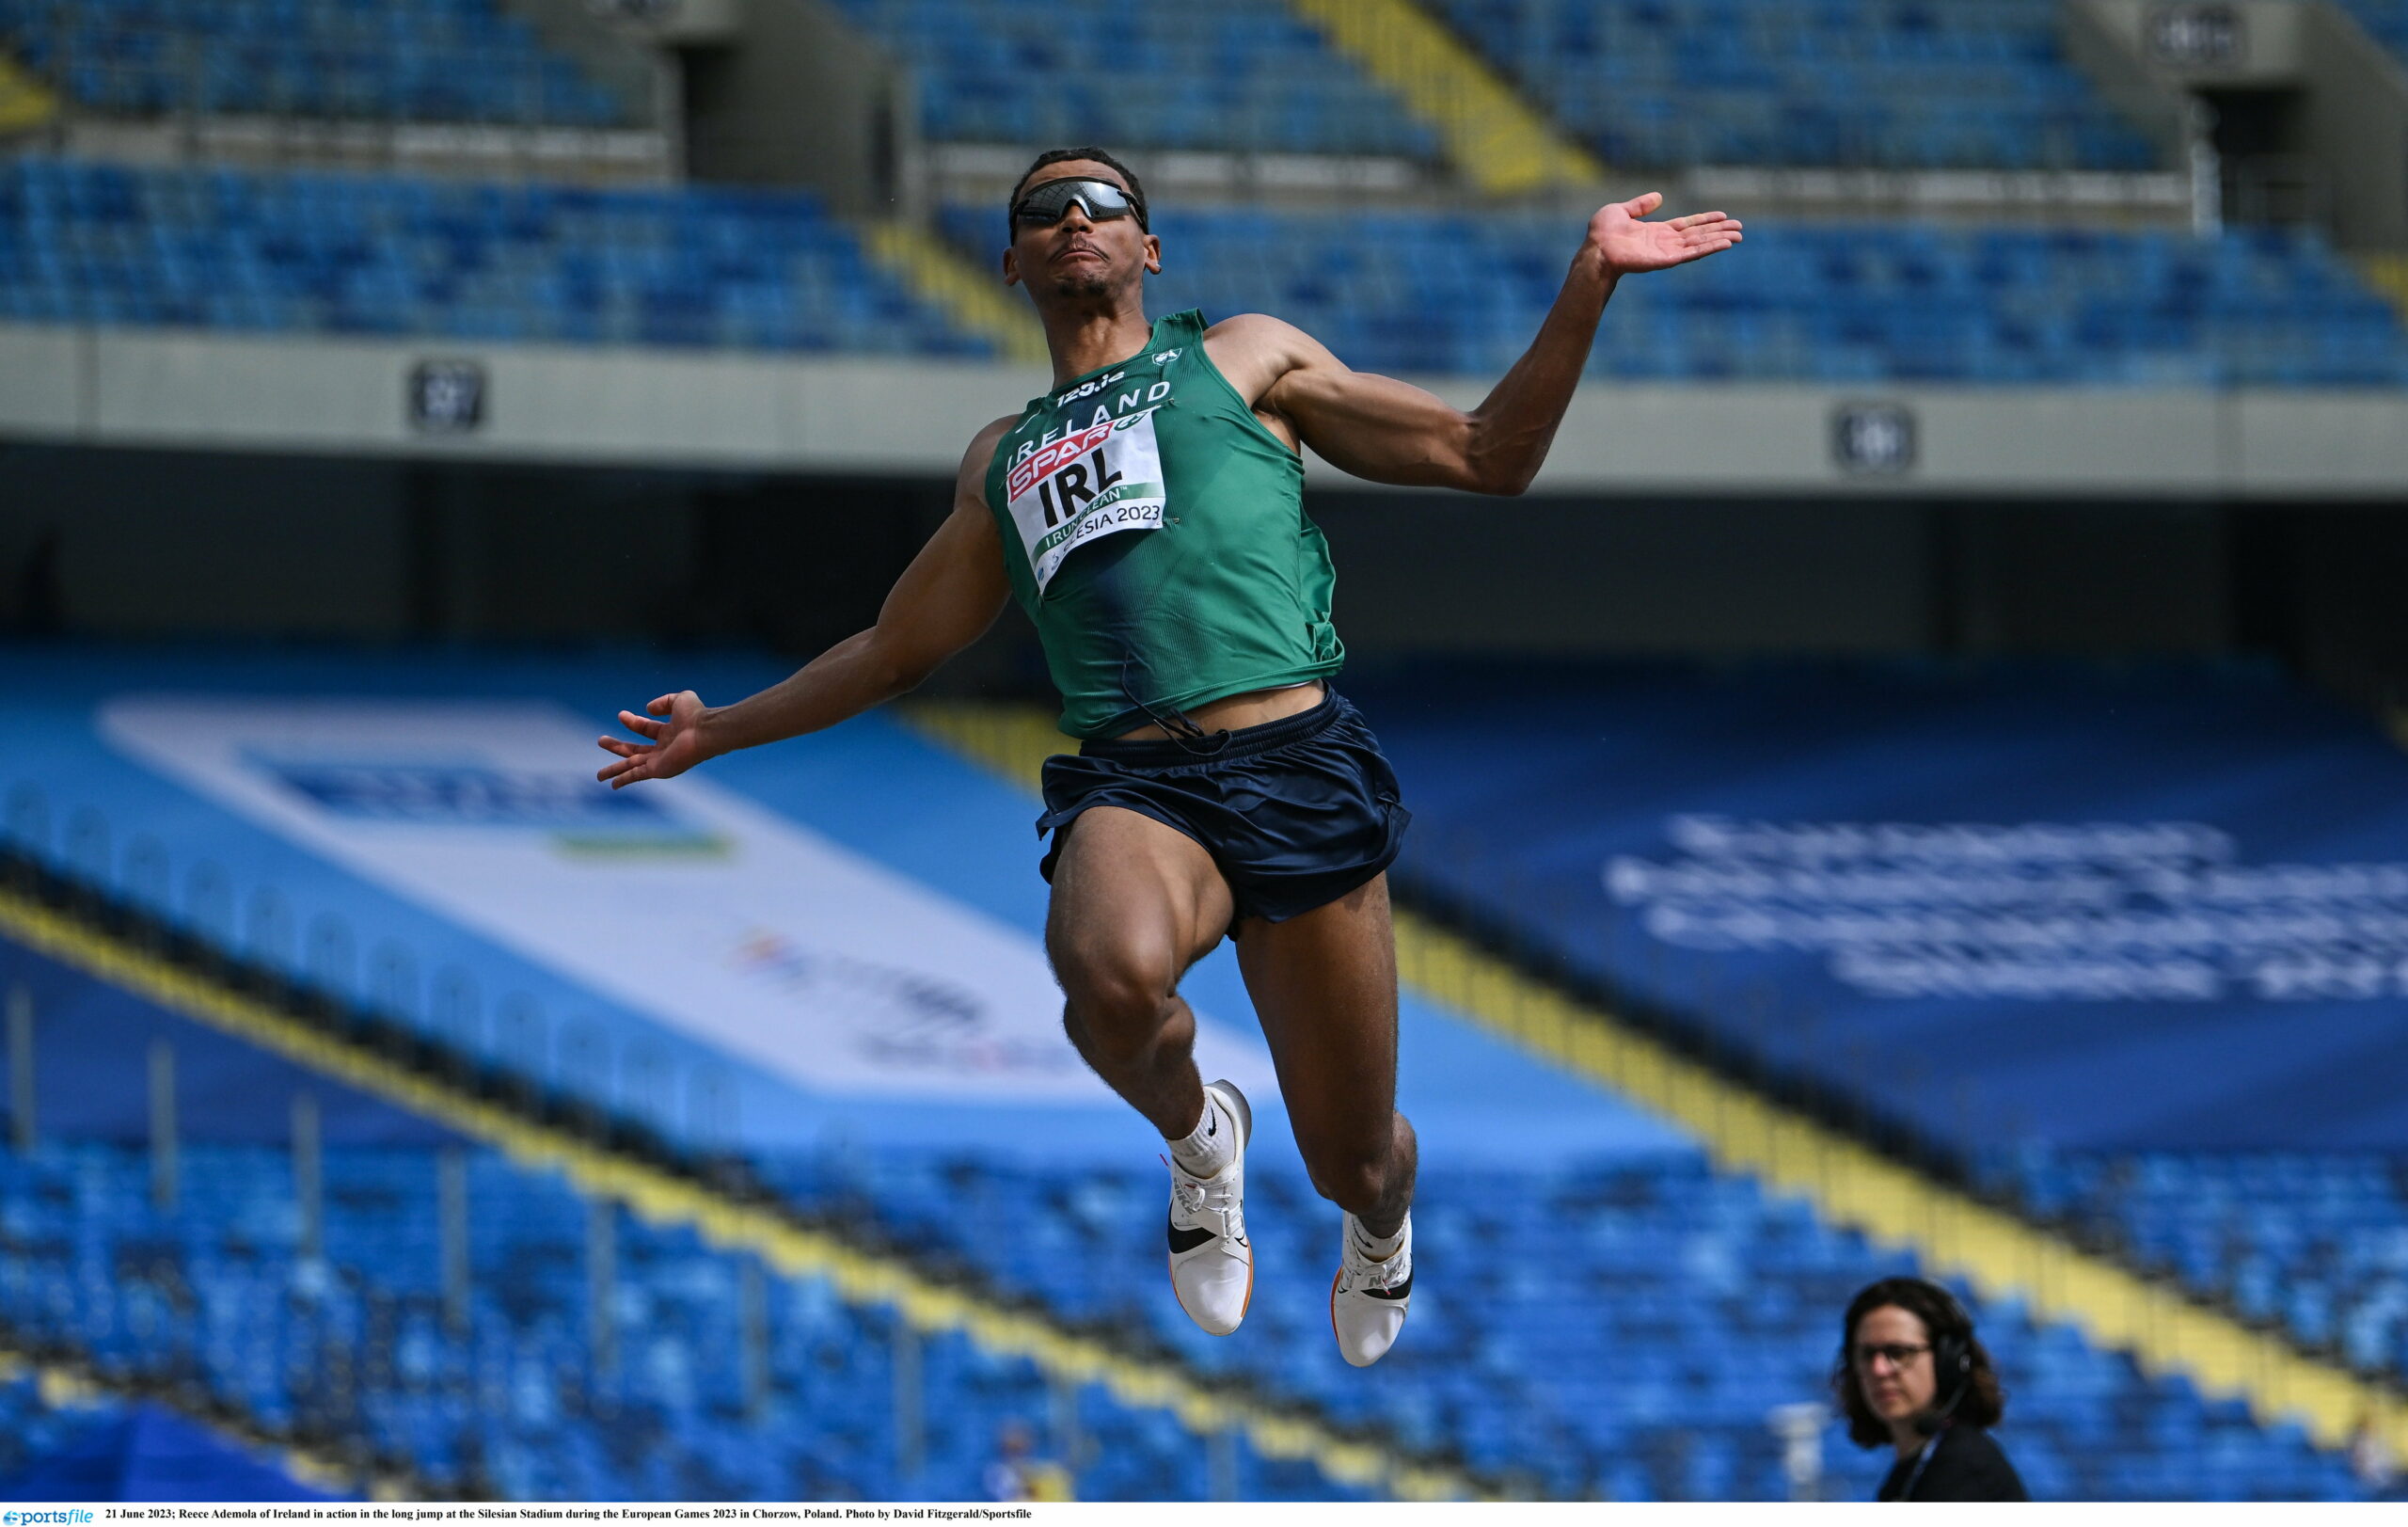 Reece Ademola extends National U23 Indoor Long Jump record in Ostrava